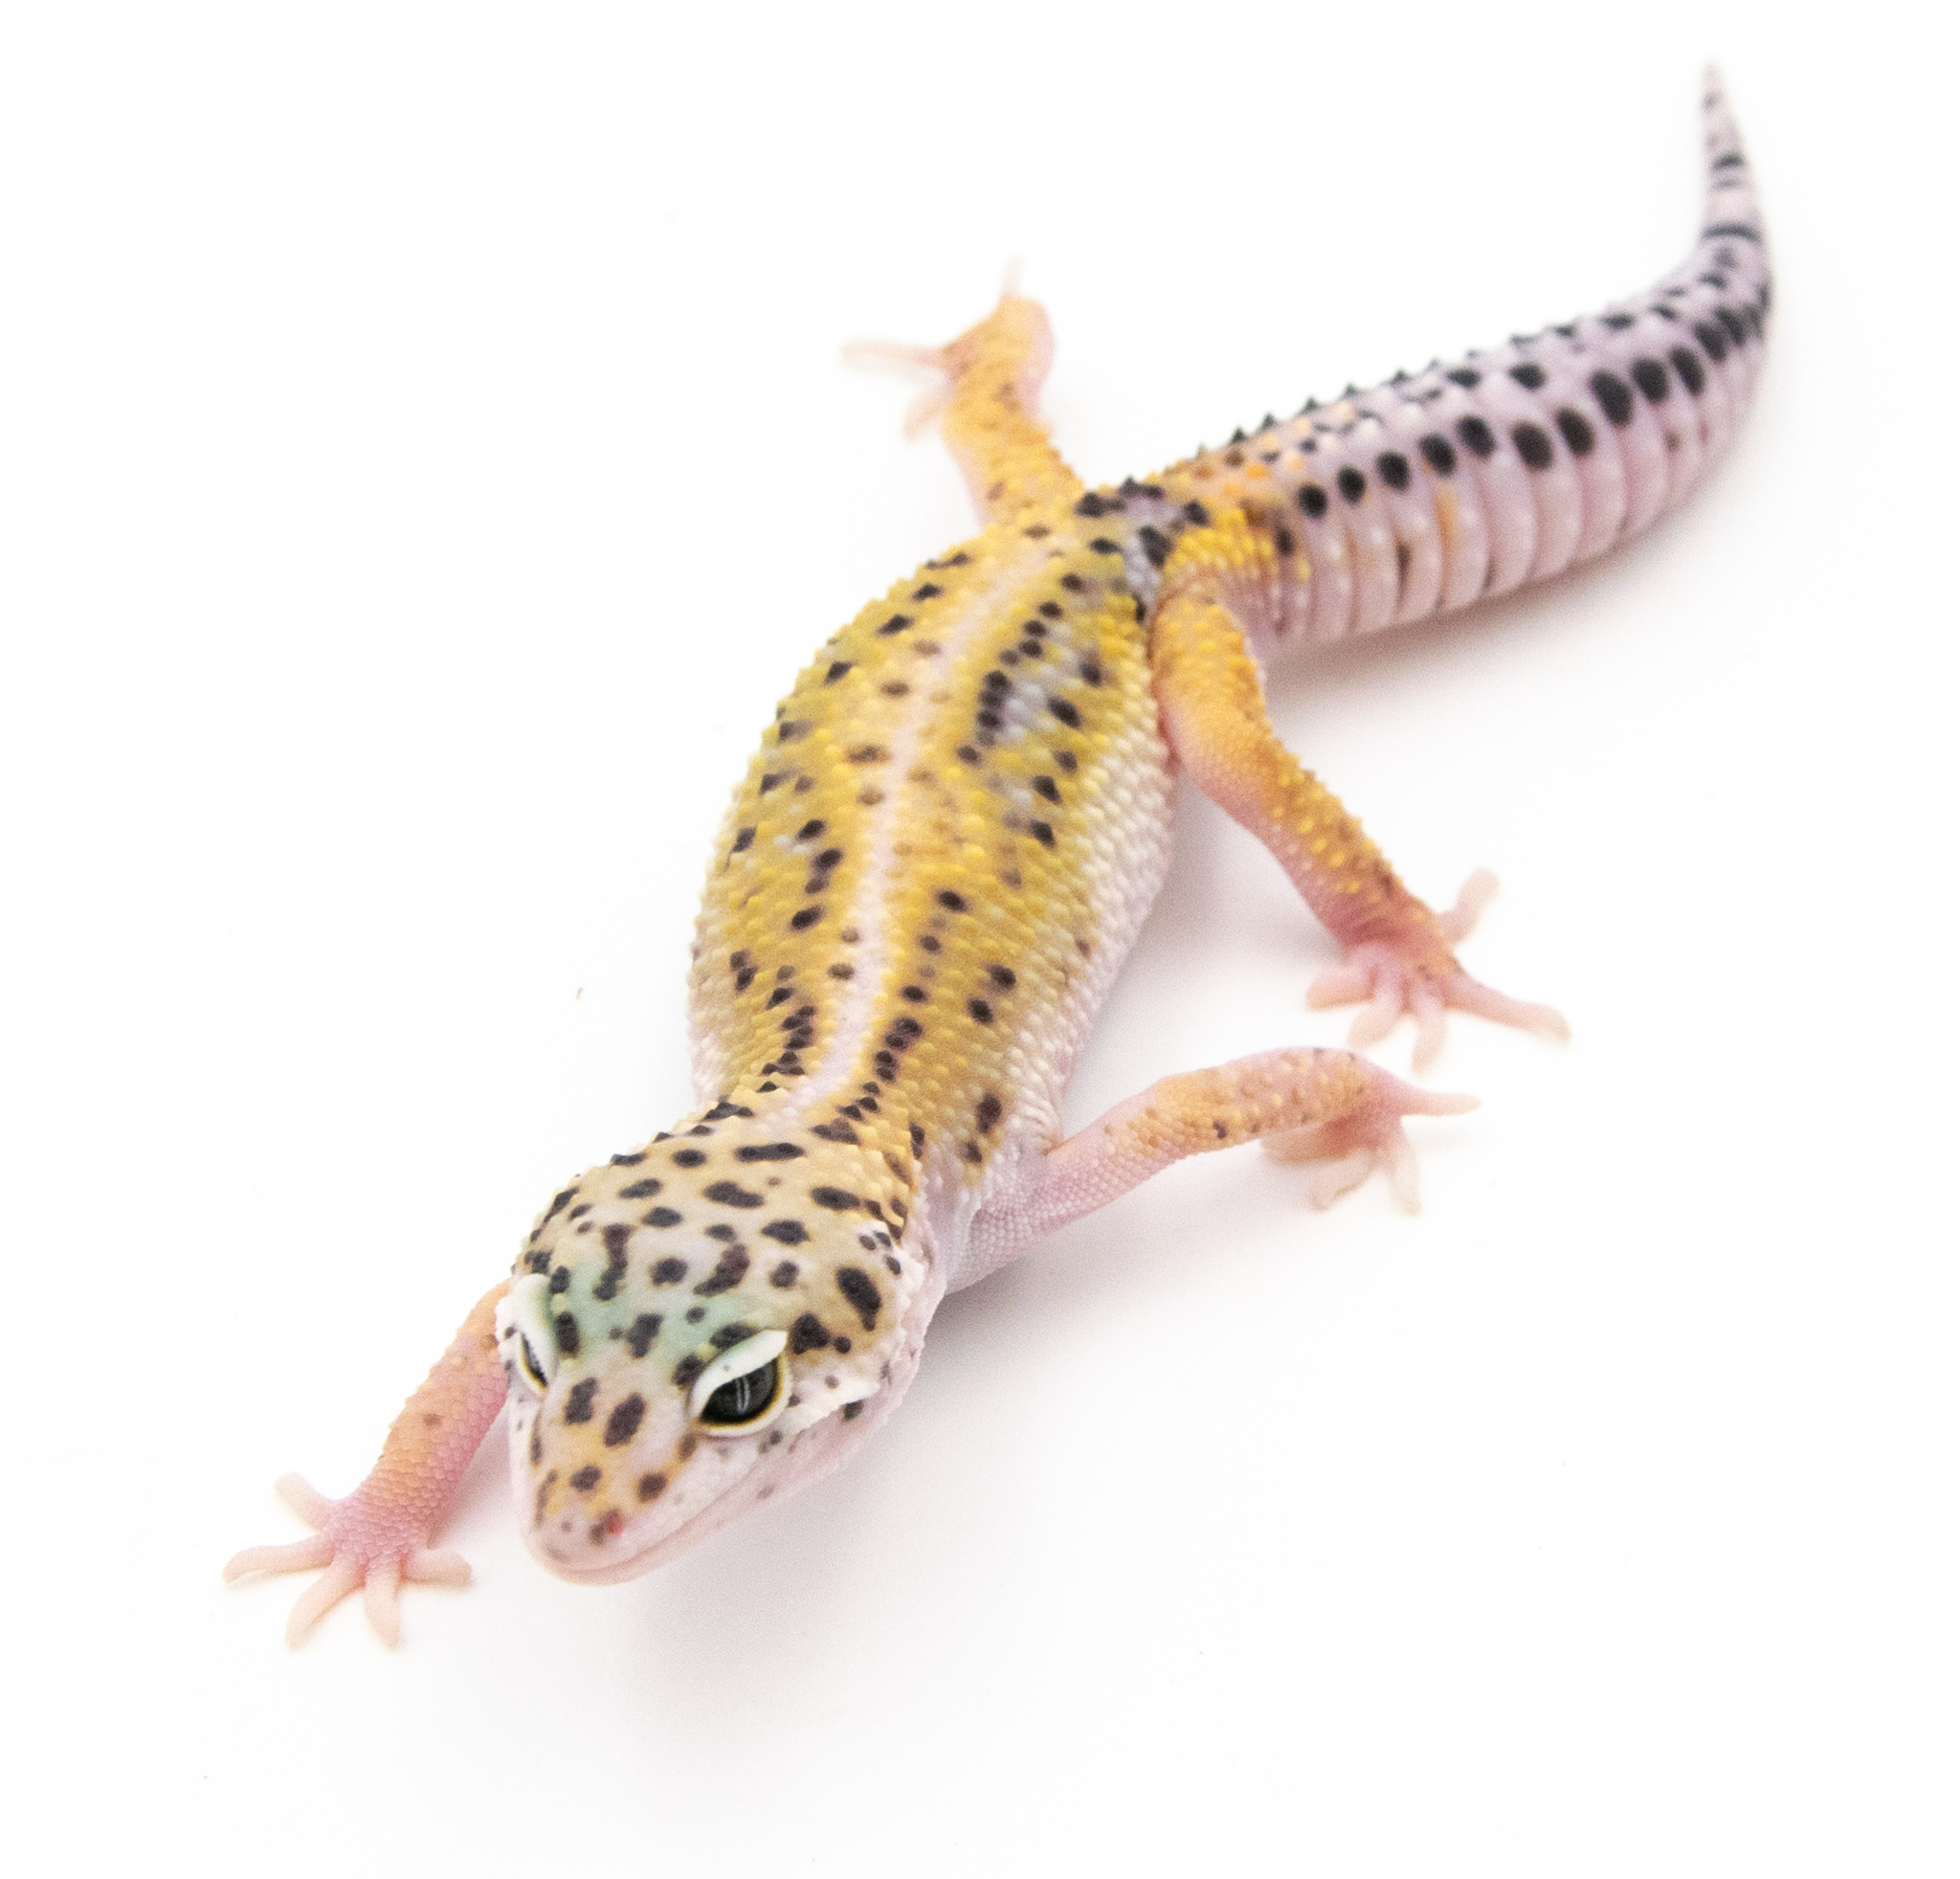 EM29 - Gecko Léopard - Eublepharis Macularius Stripe - non sexé - NC 2022